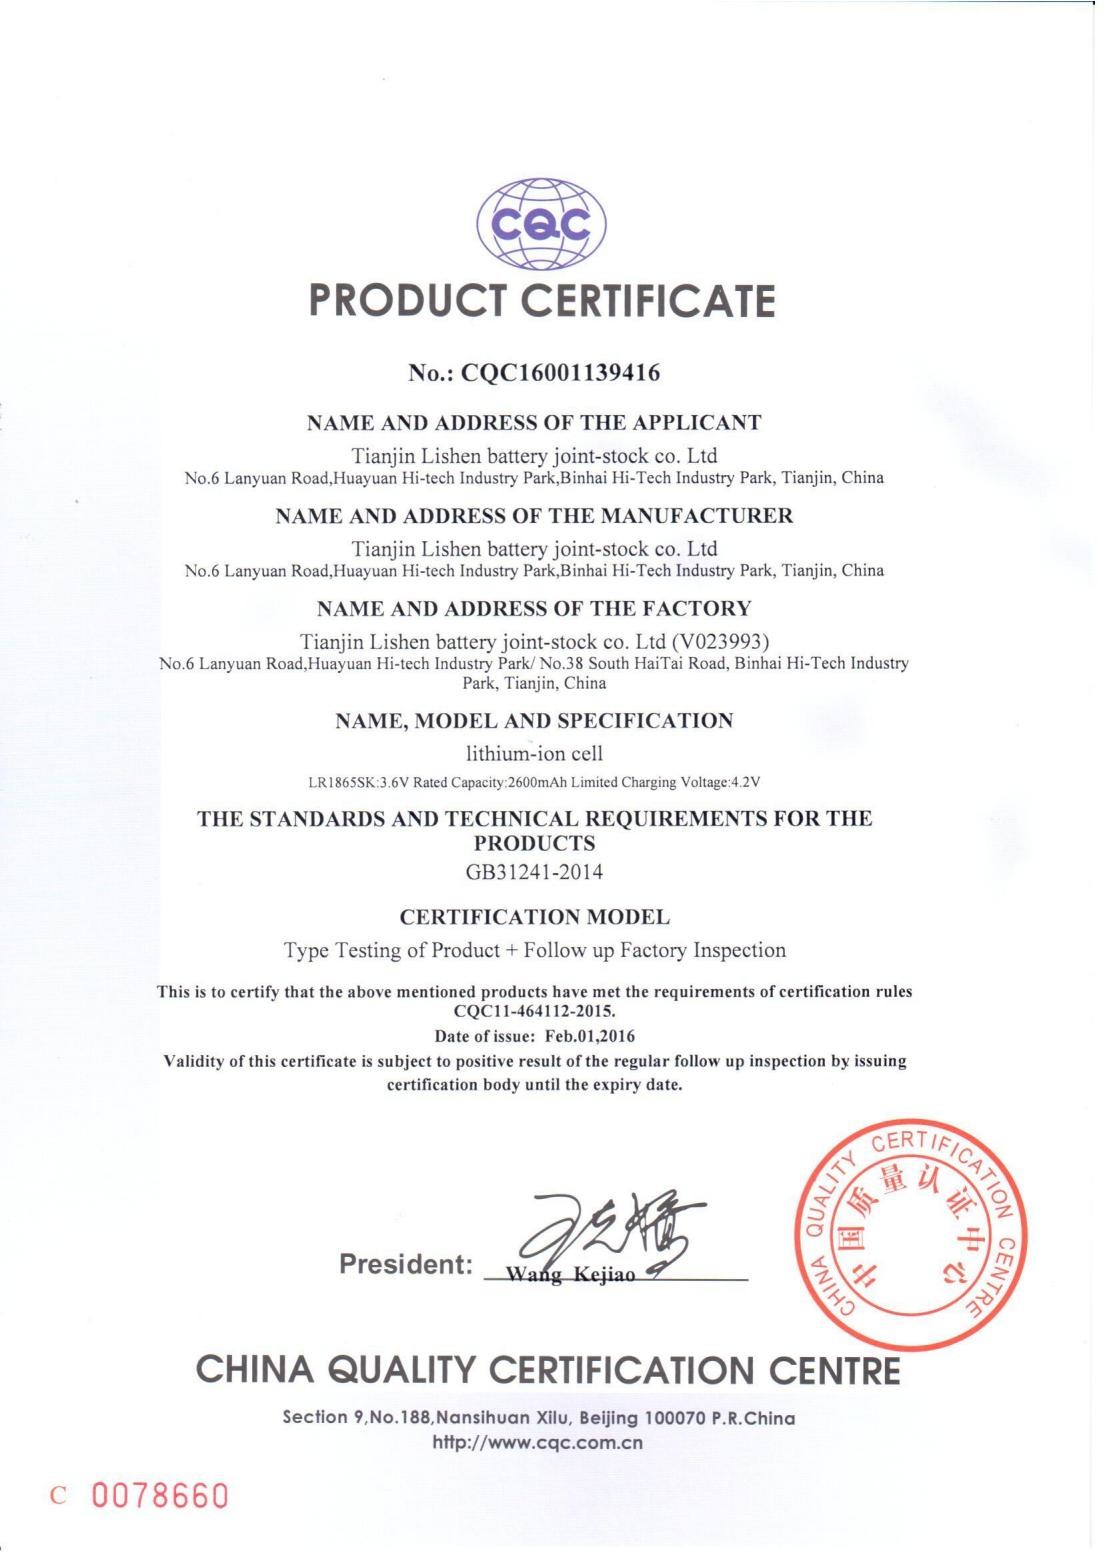 China Dongguan Huaxin Power Technology Co., Ltd Certification